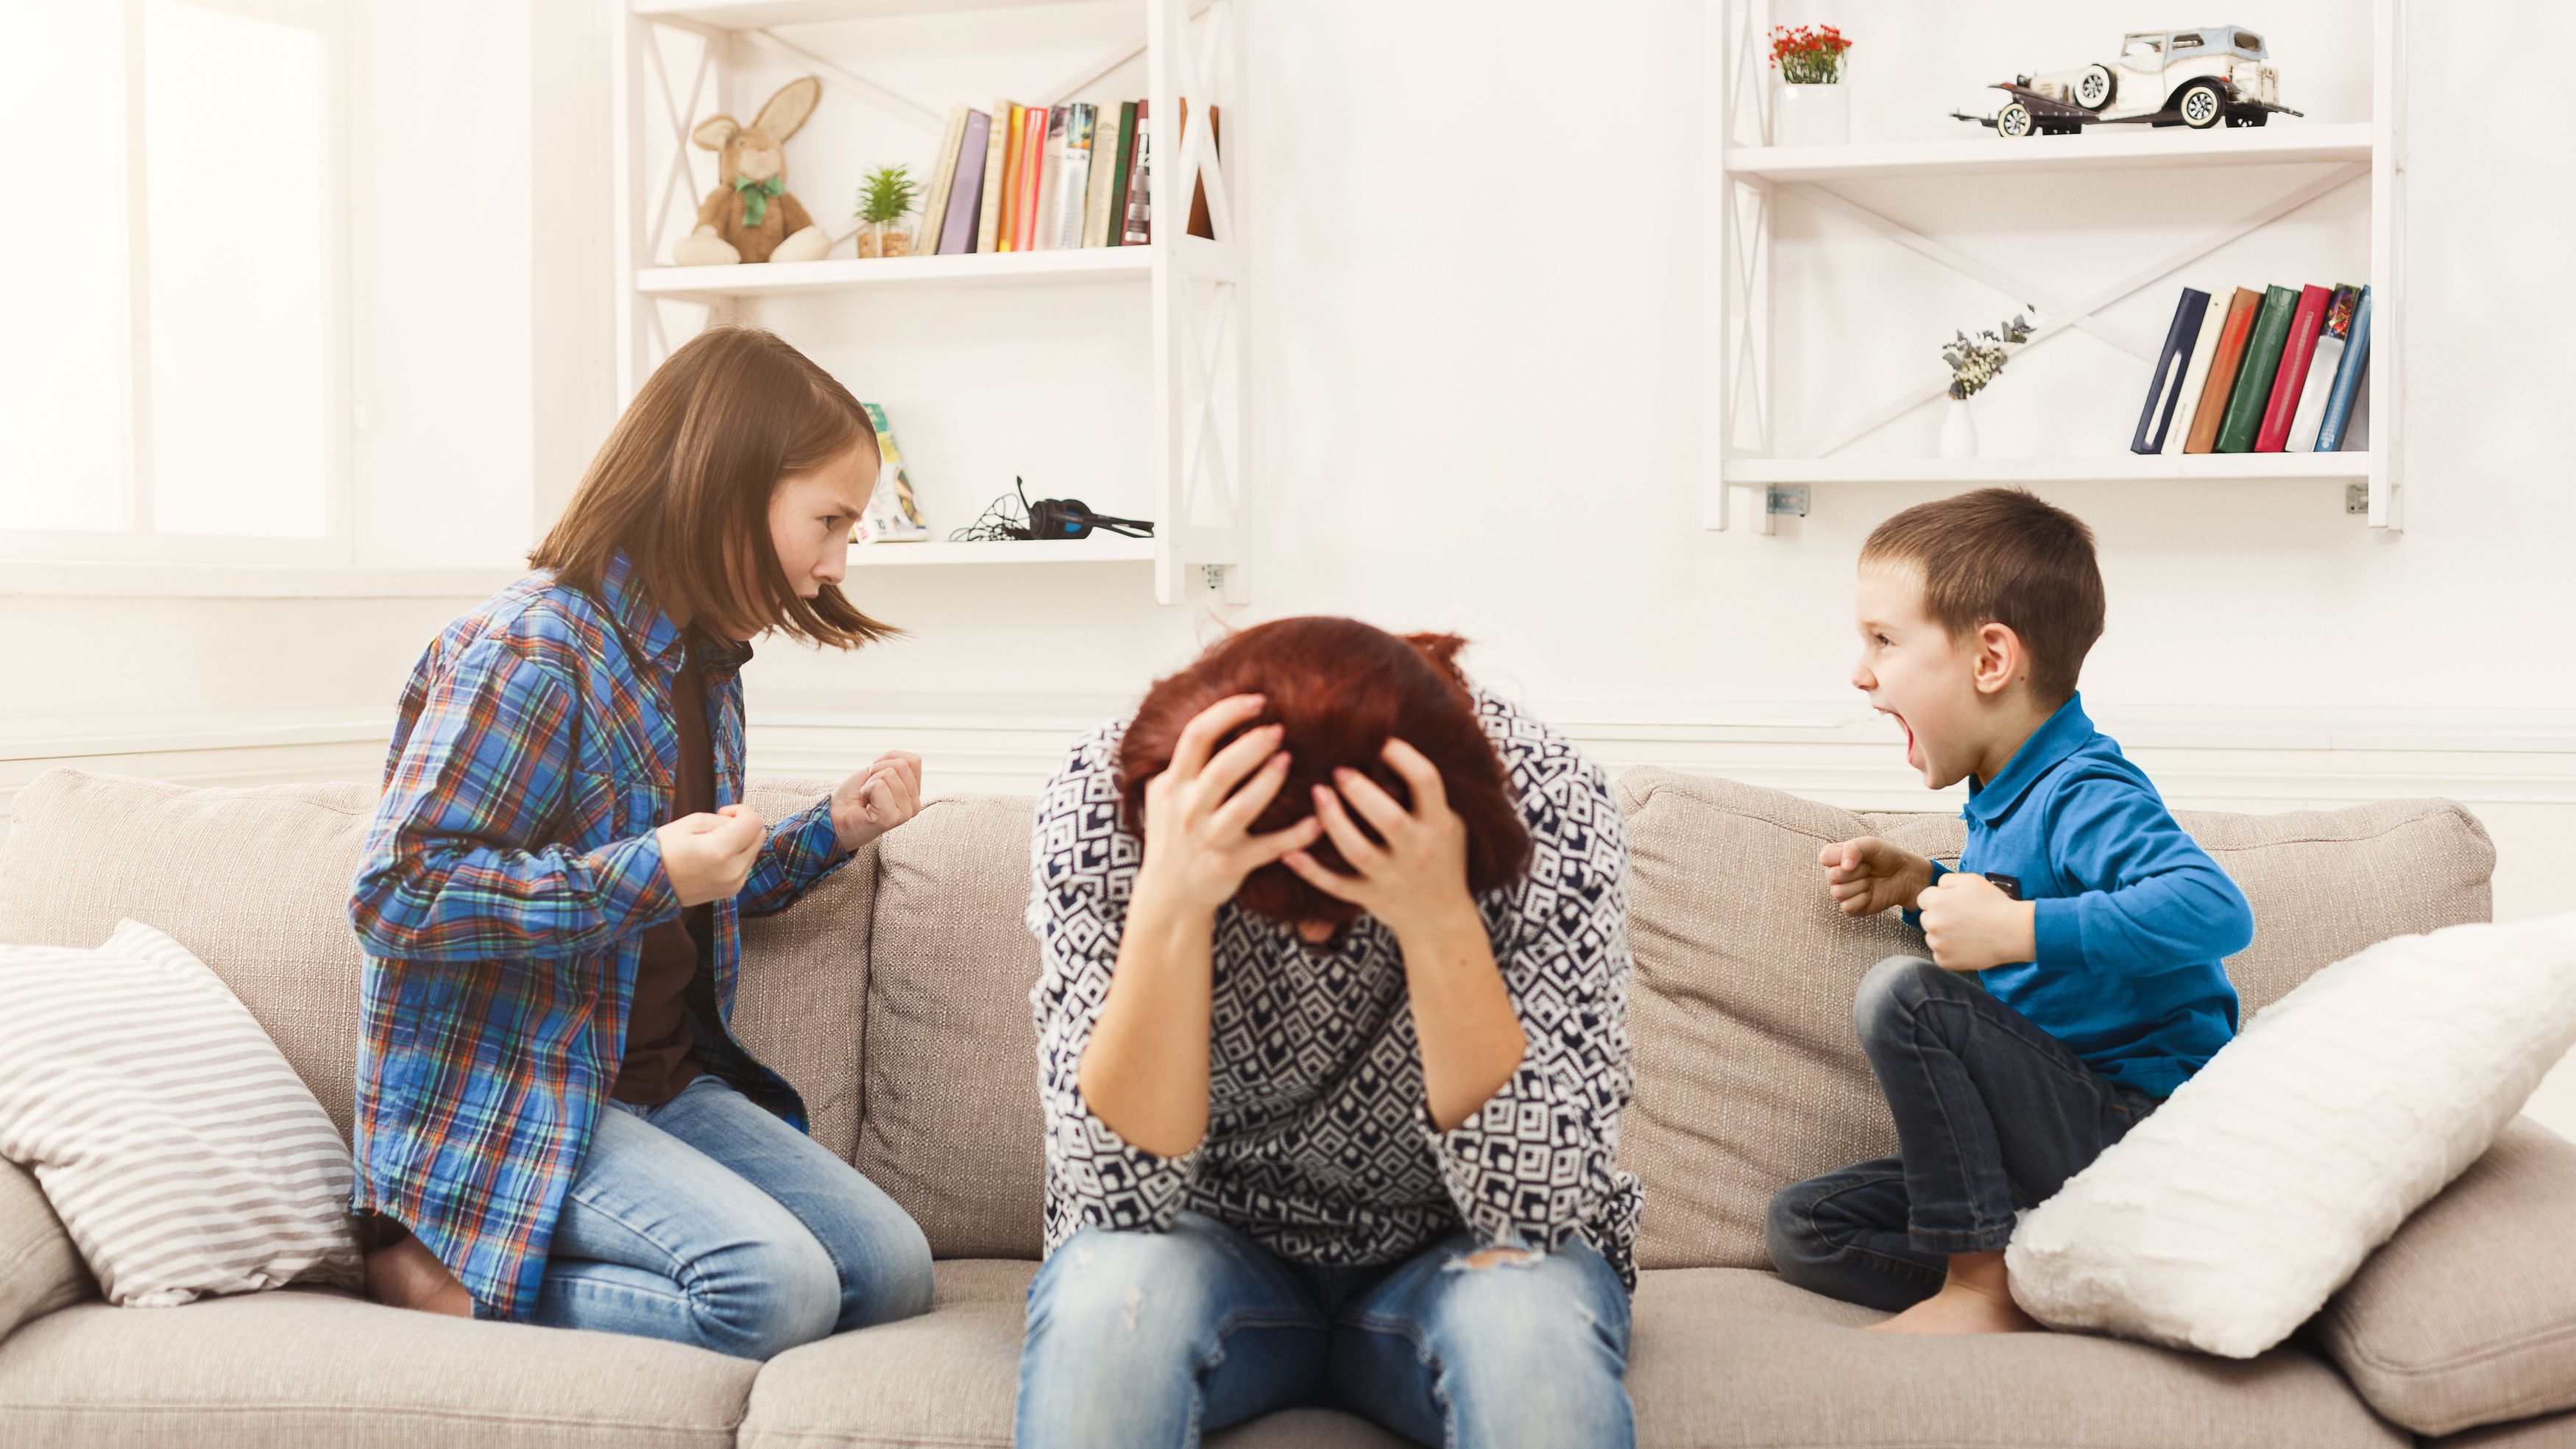 Apakah keluargamu termasuk toxic? Coba ketahui dari tes ini